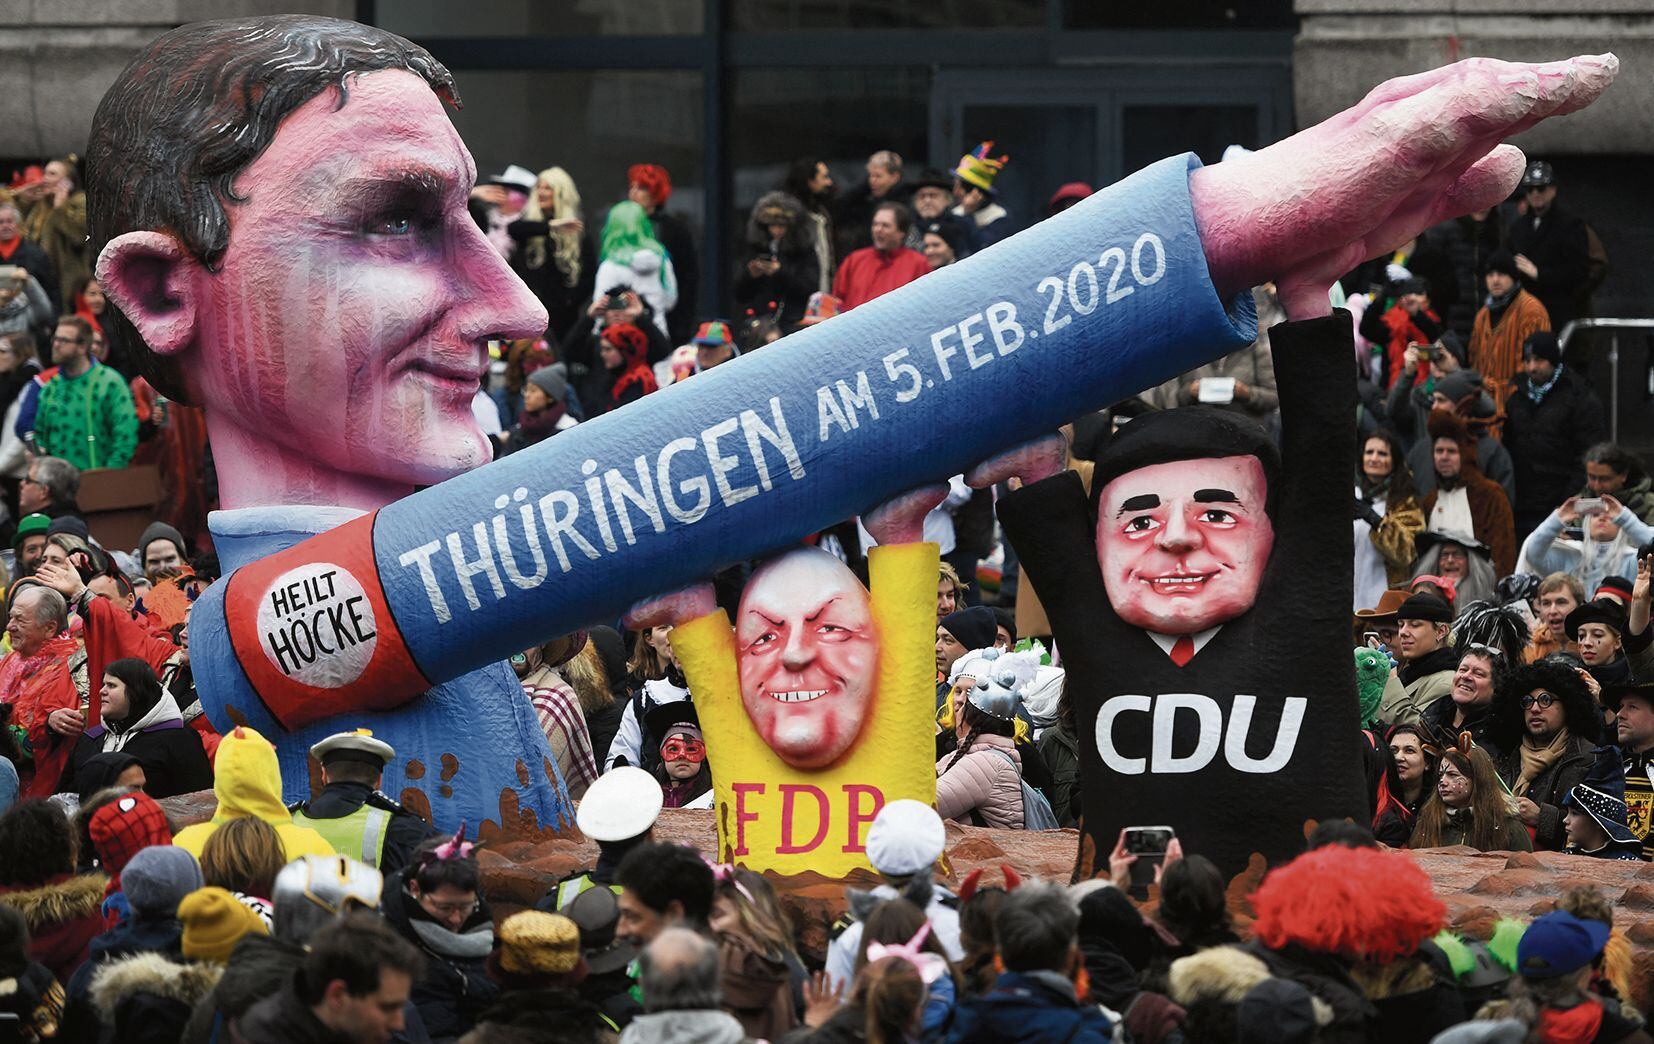 Un muñeco del líder de la derecha radical Björn Höcke hace un saludo nazi en un desfile en Dusseldorf en el 2020.Un partido extremista -acusado incluso de neonazi- podría ganar un gran respaldo pronto. (Foto: AFP)